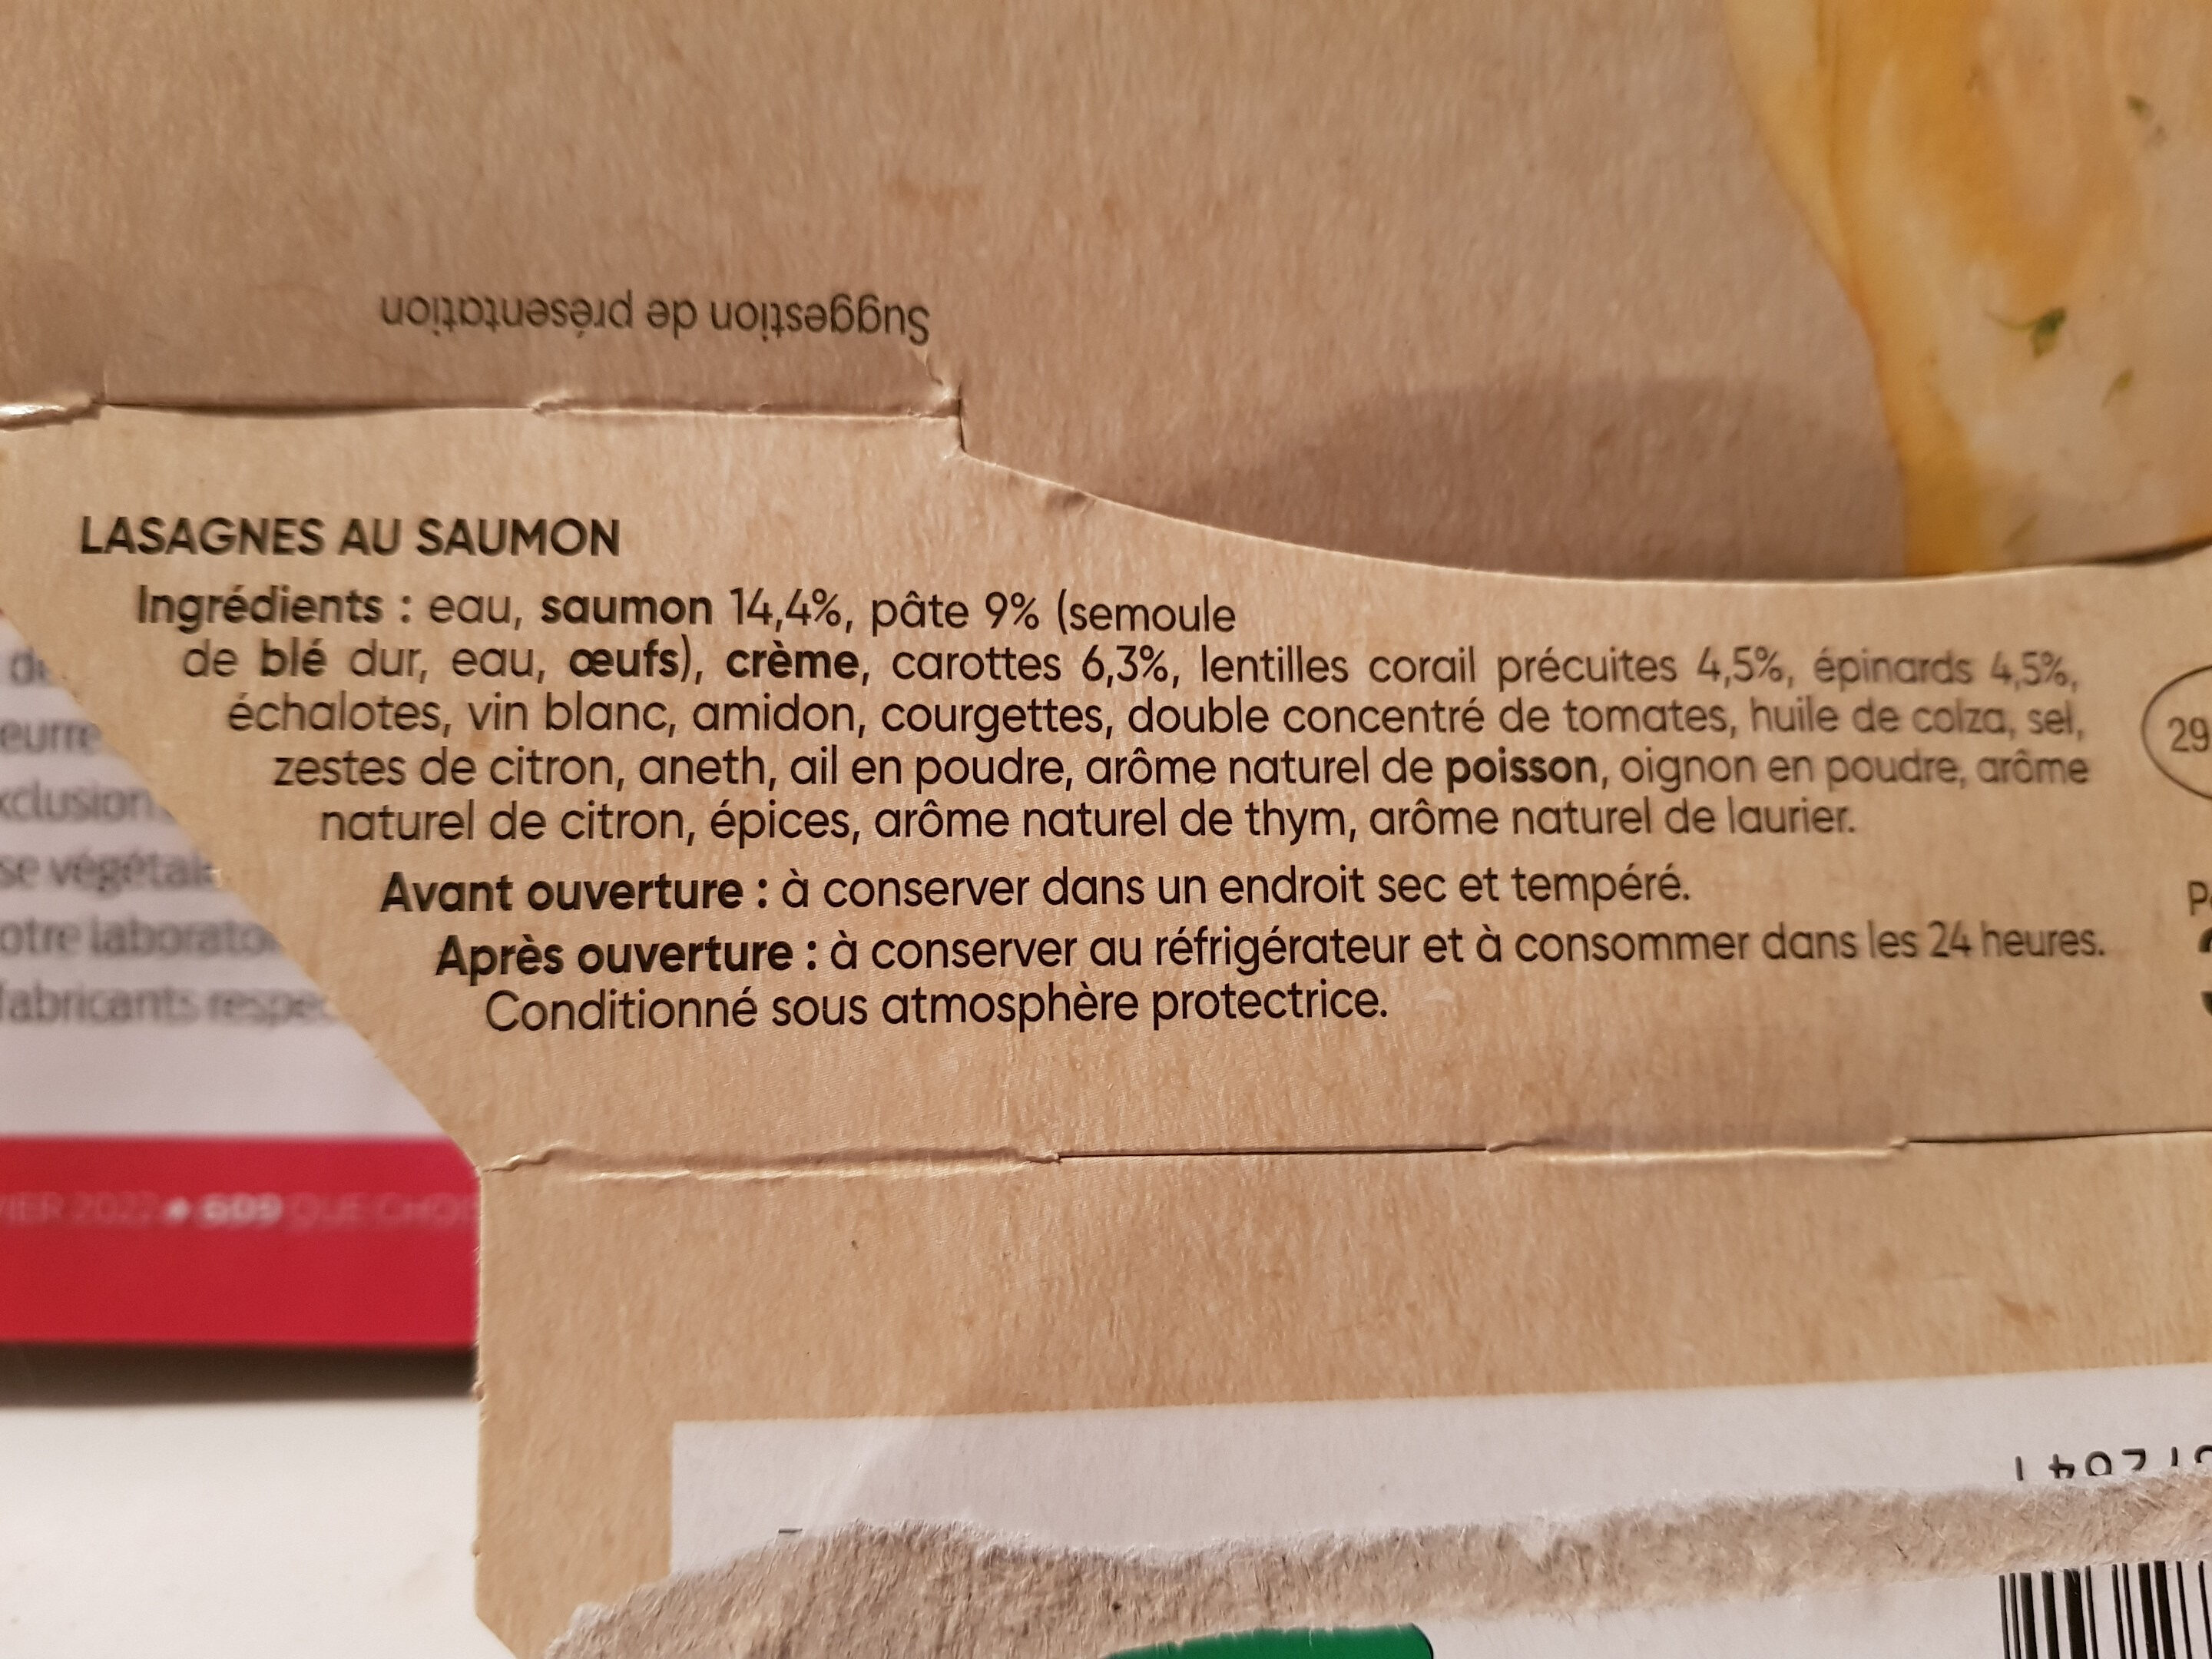 Lasagnes au saumon - Ingrédients